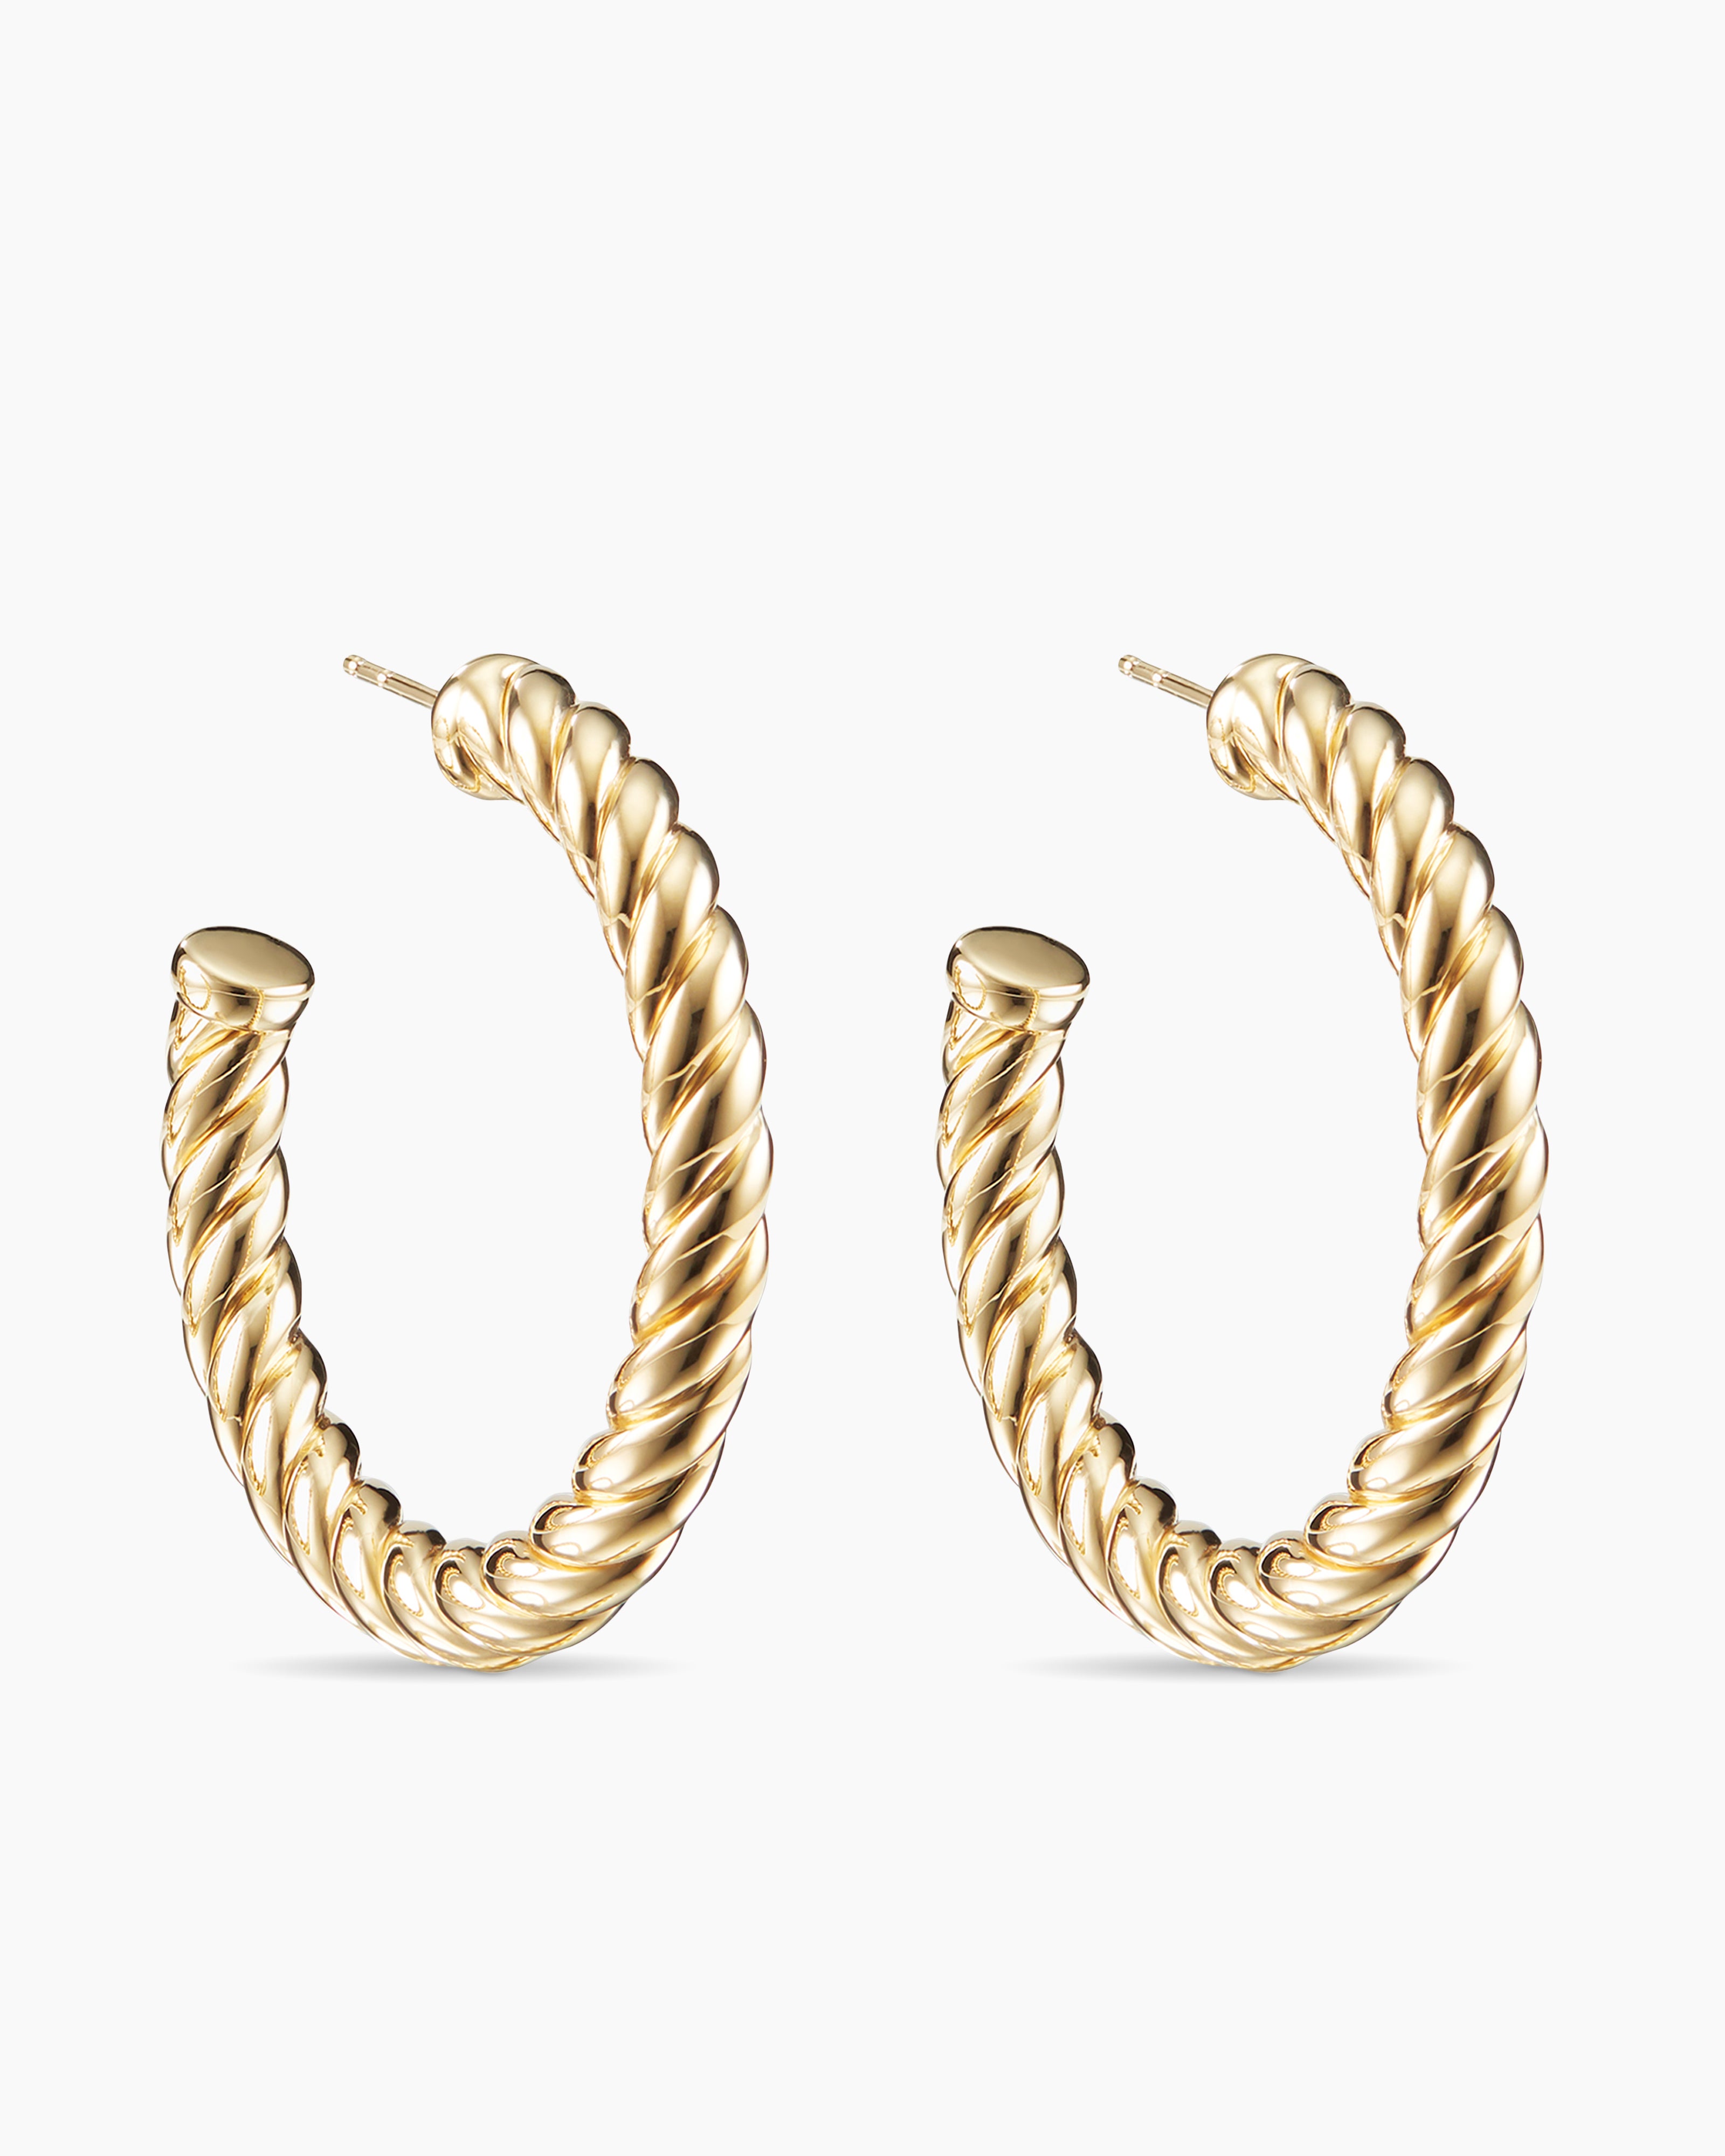 Twisted Hoop Earrings - Paris Small